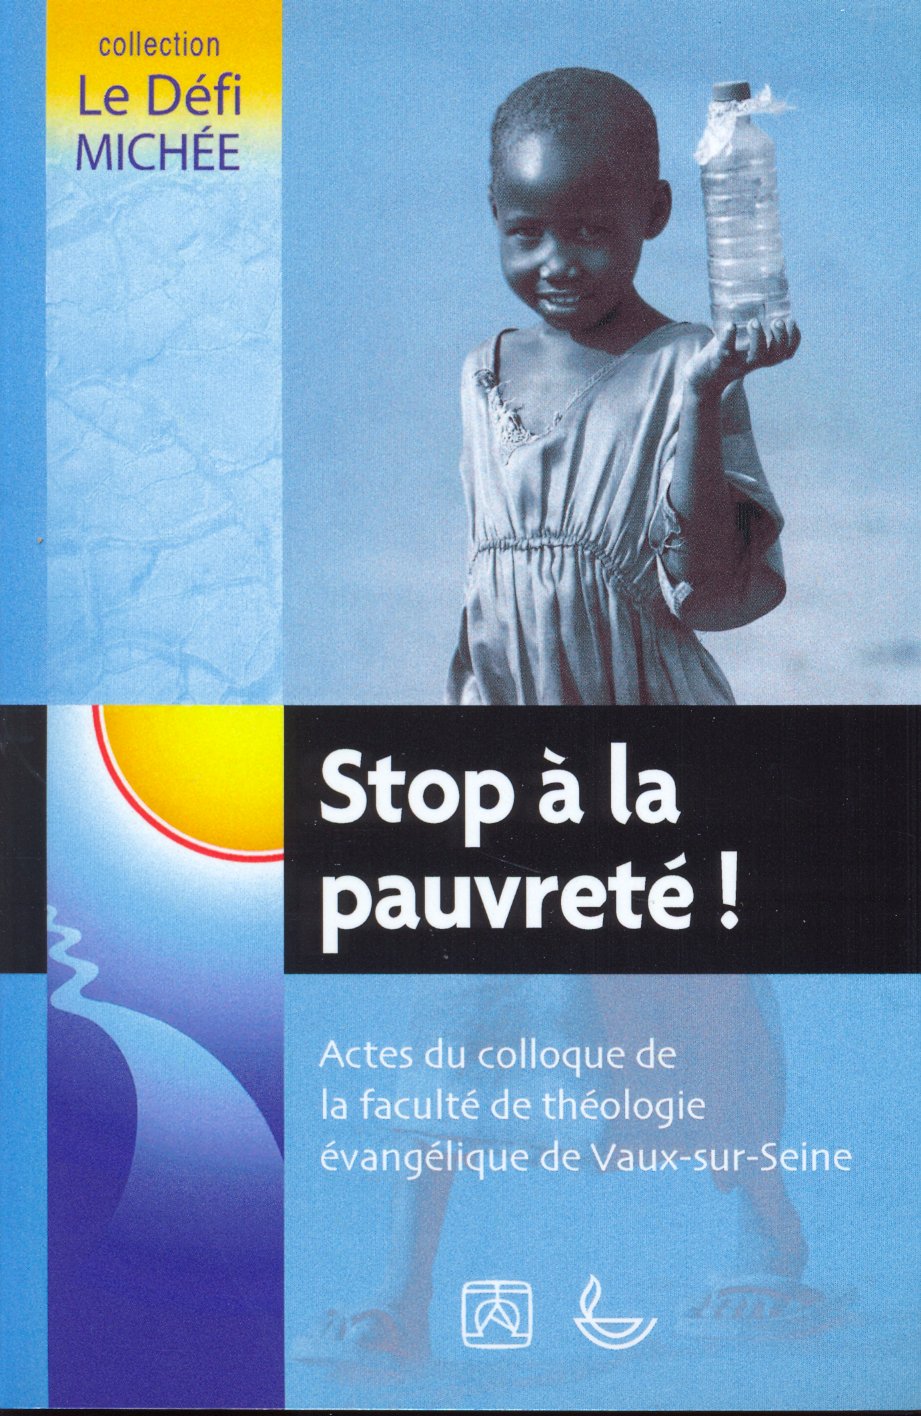 Stop à la pauvreté - Colloques de la fac de Vaux-sur-Seine